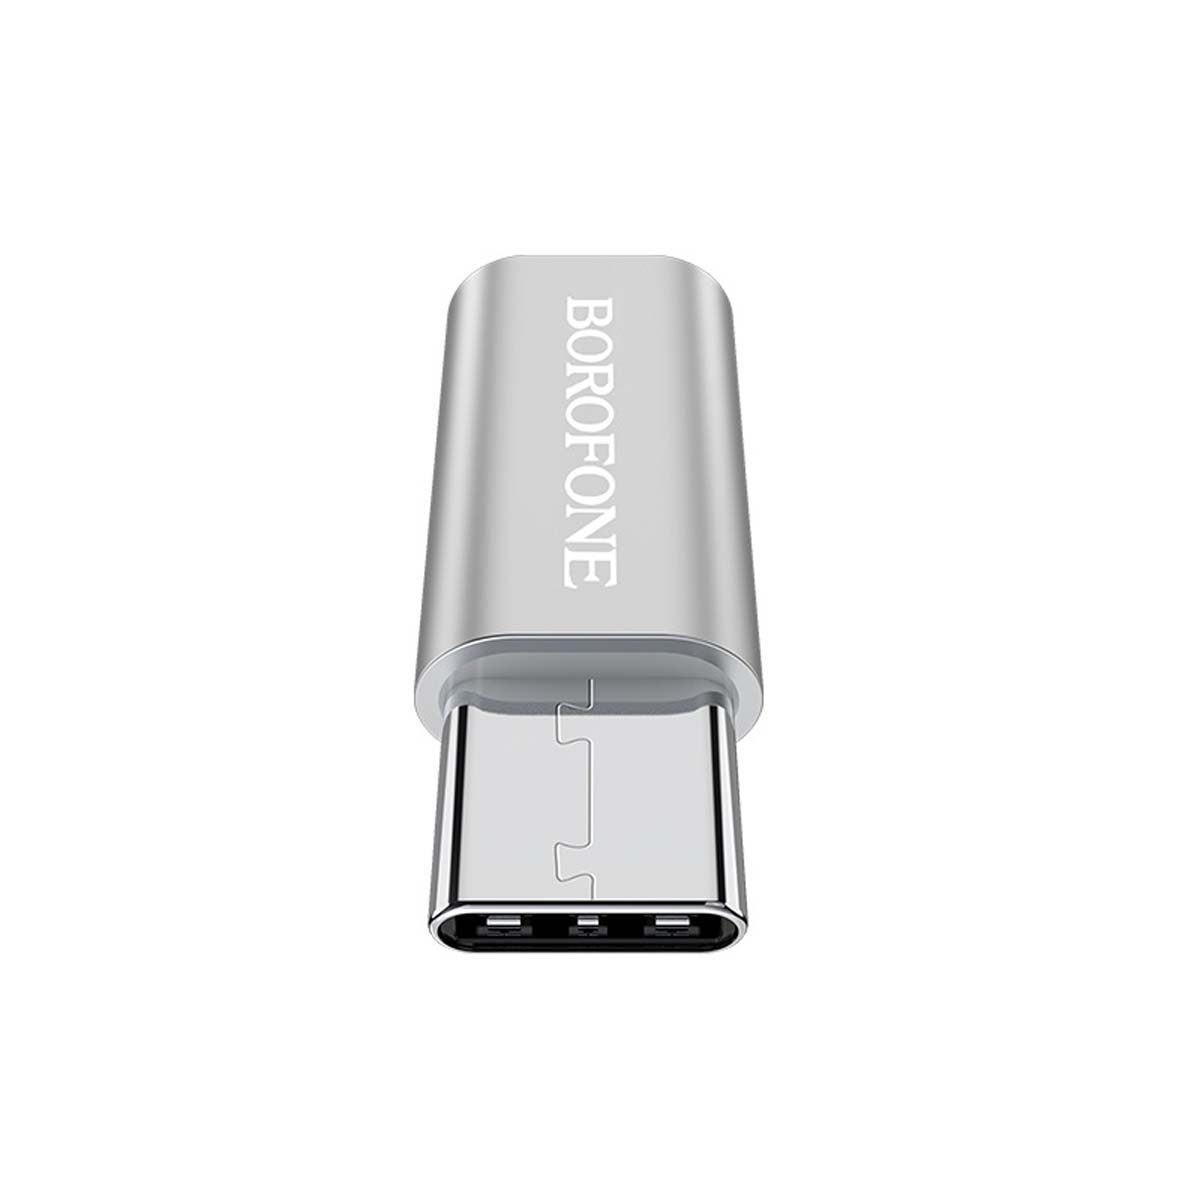 Адаптер, переходник, конвертер BOROFONE BV4 Micro USB на USB Type C, поддержка OTG, цвет серебристый